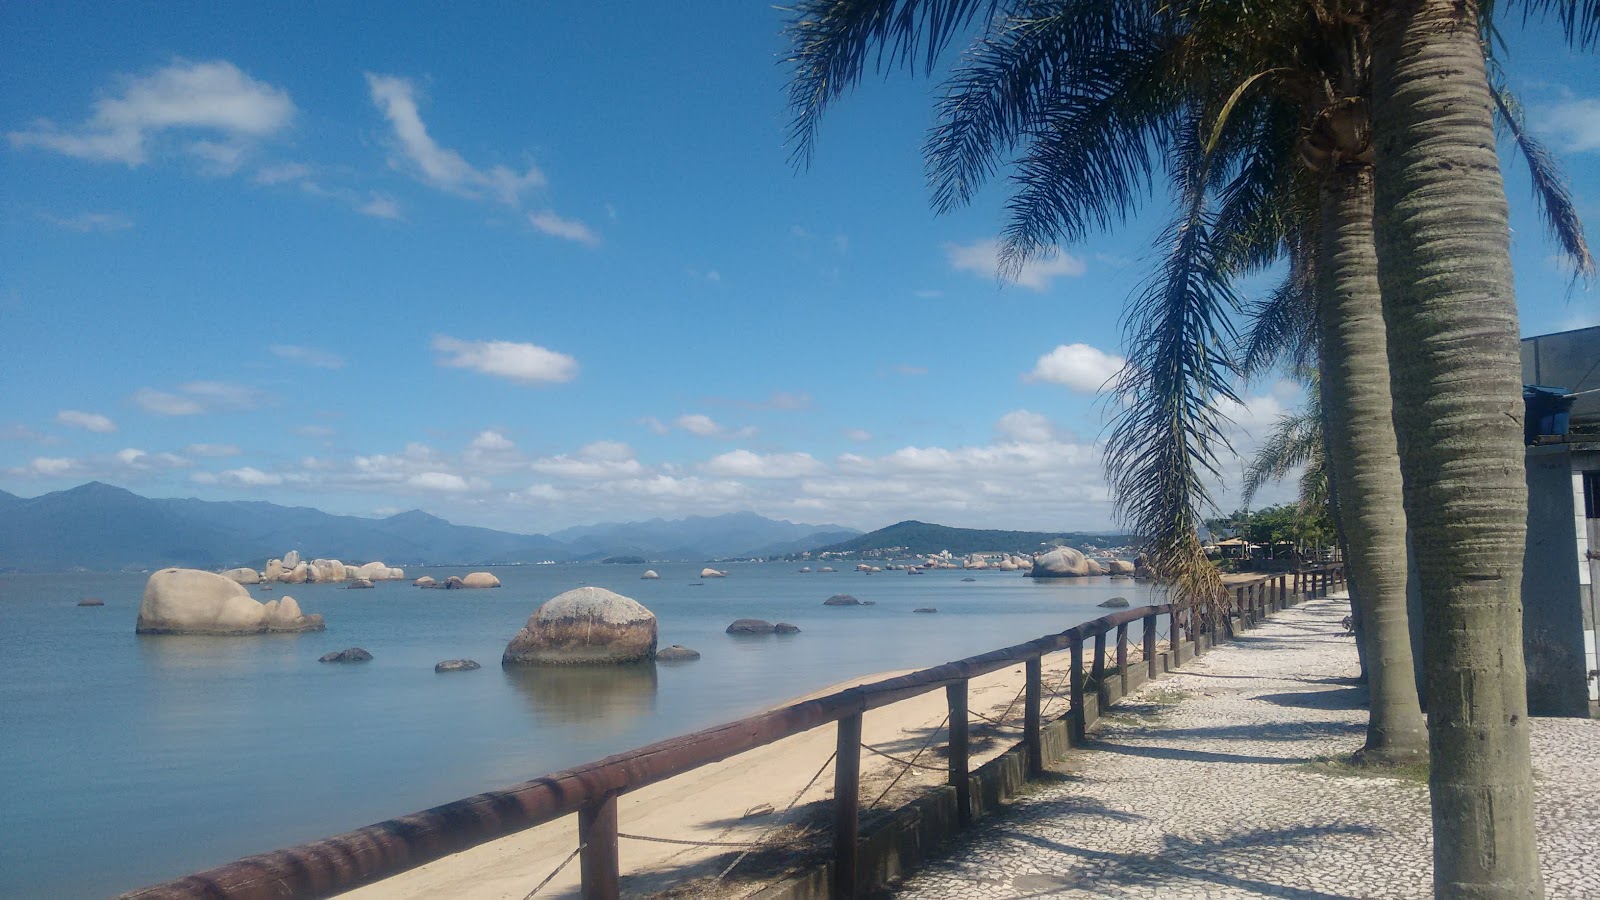 Praia das Palmeiras'in fotoğrafı imkanlar alanı